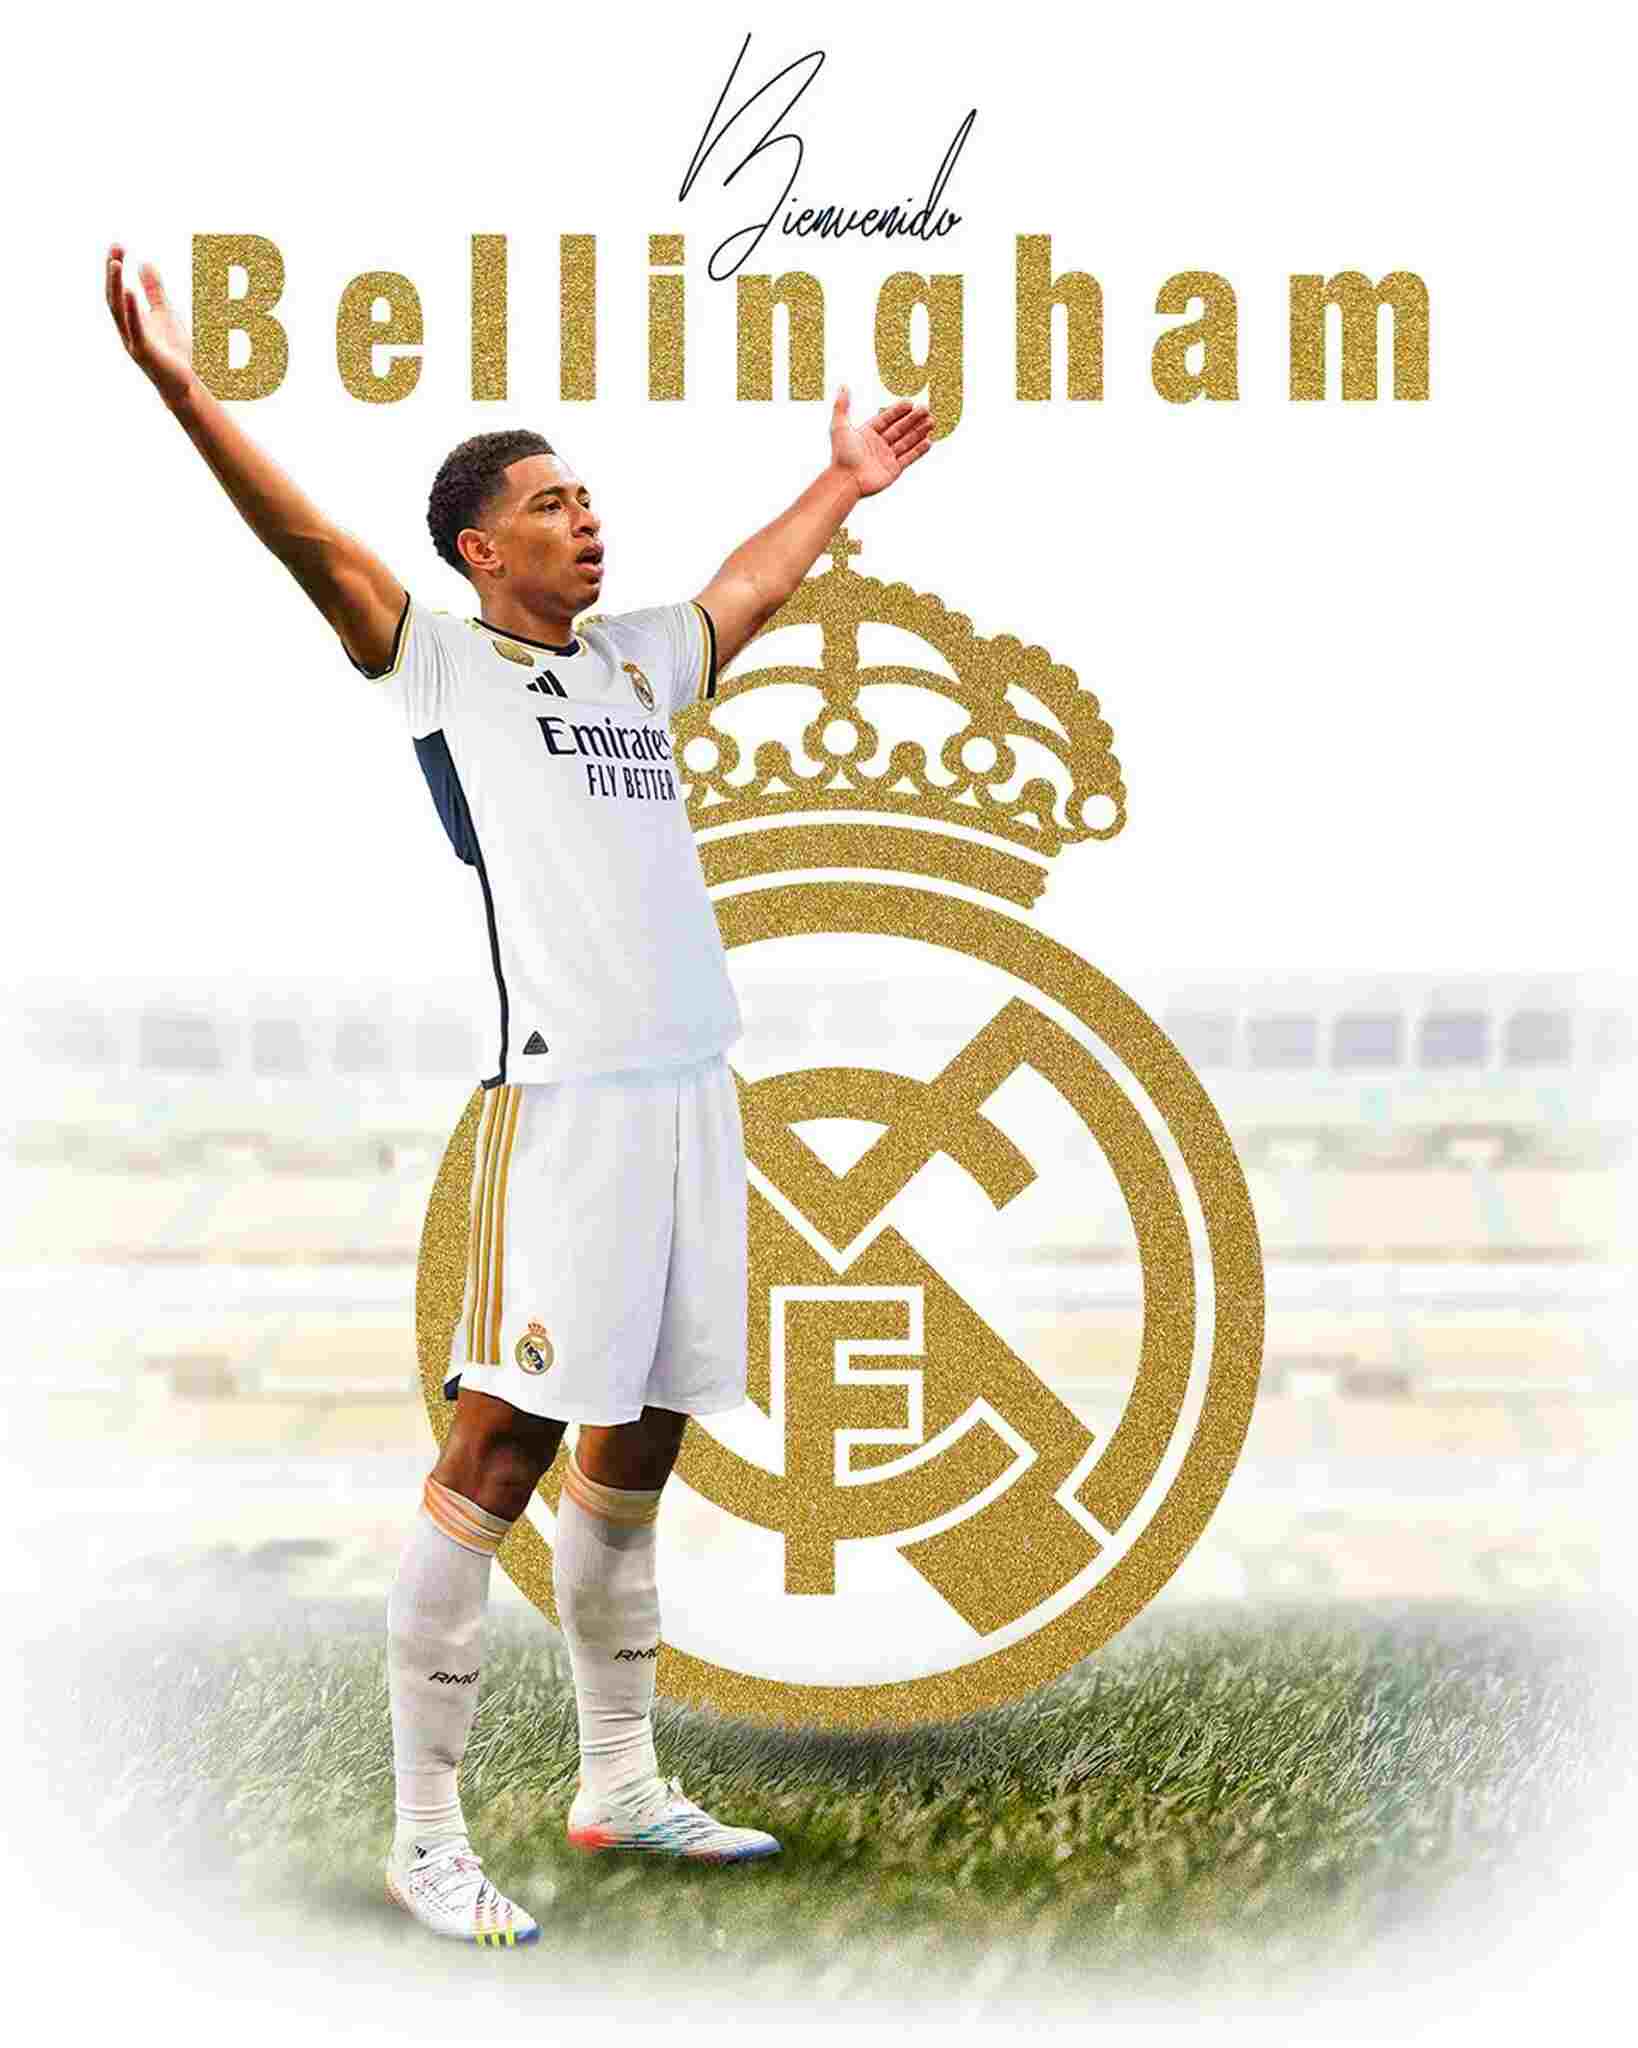 Jude Bellingham (volante / 20 anos / Inglaterra): Real Madrid - 103 milhões de euros (aproximadamente R$ 540 milhões)